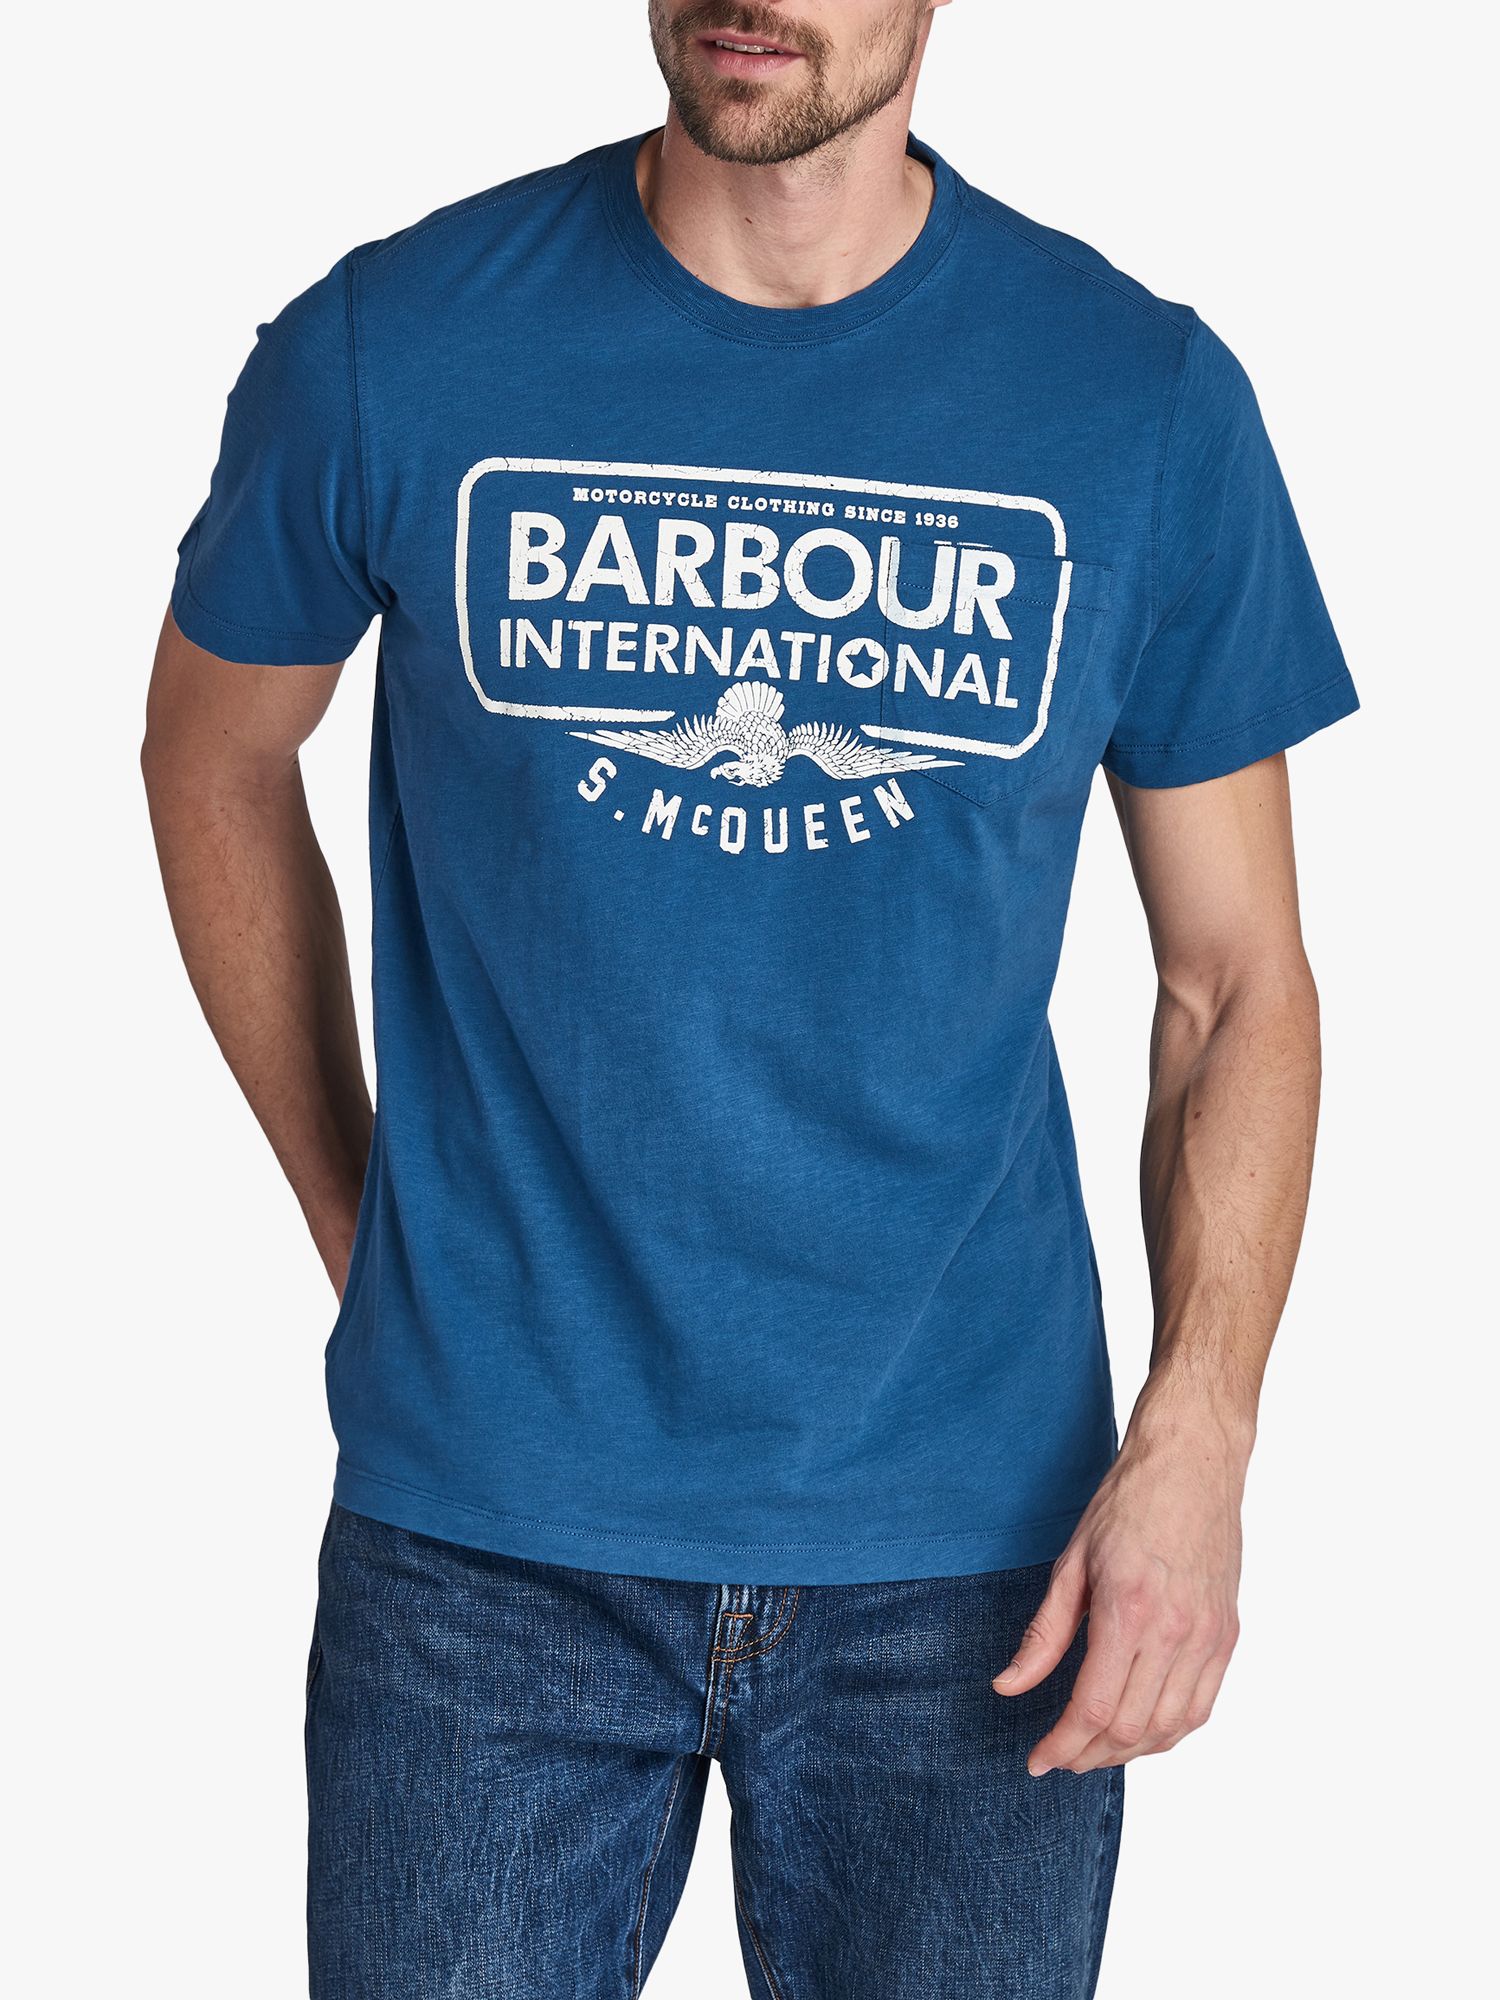 ترهل barbour motorcycle t shirts 